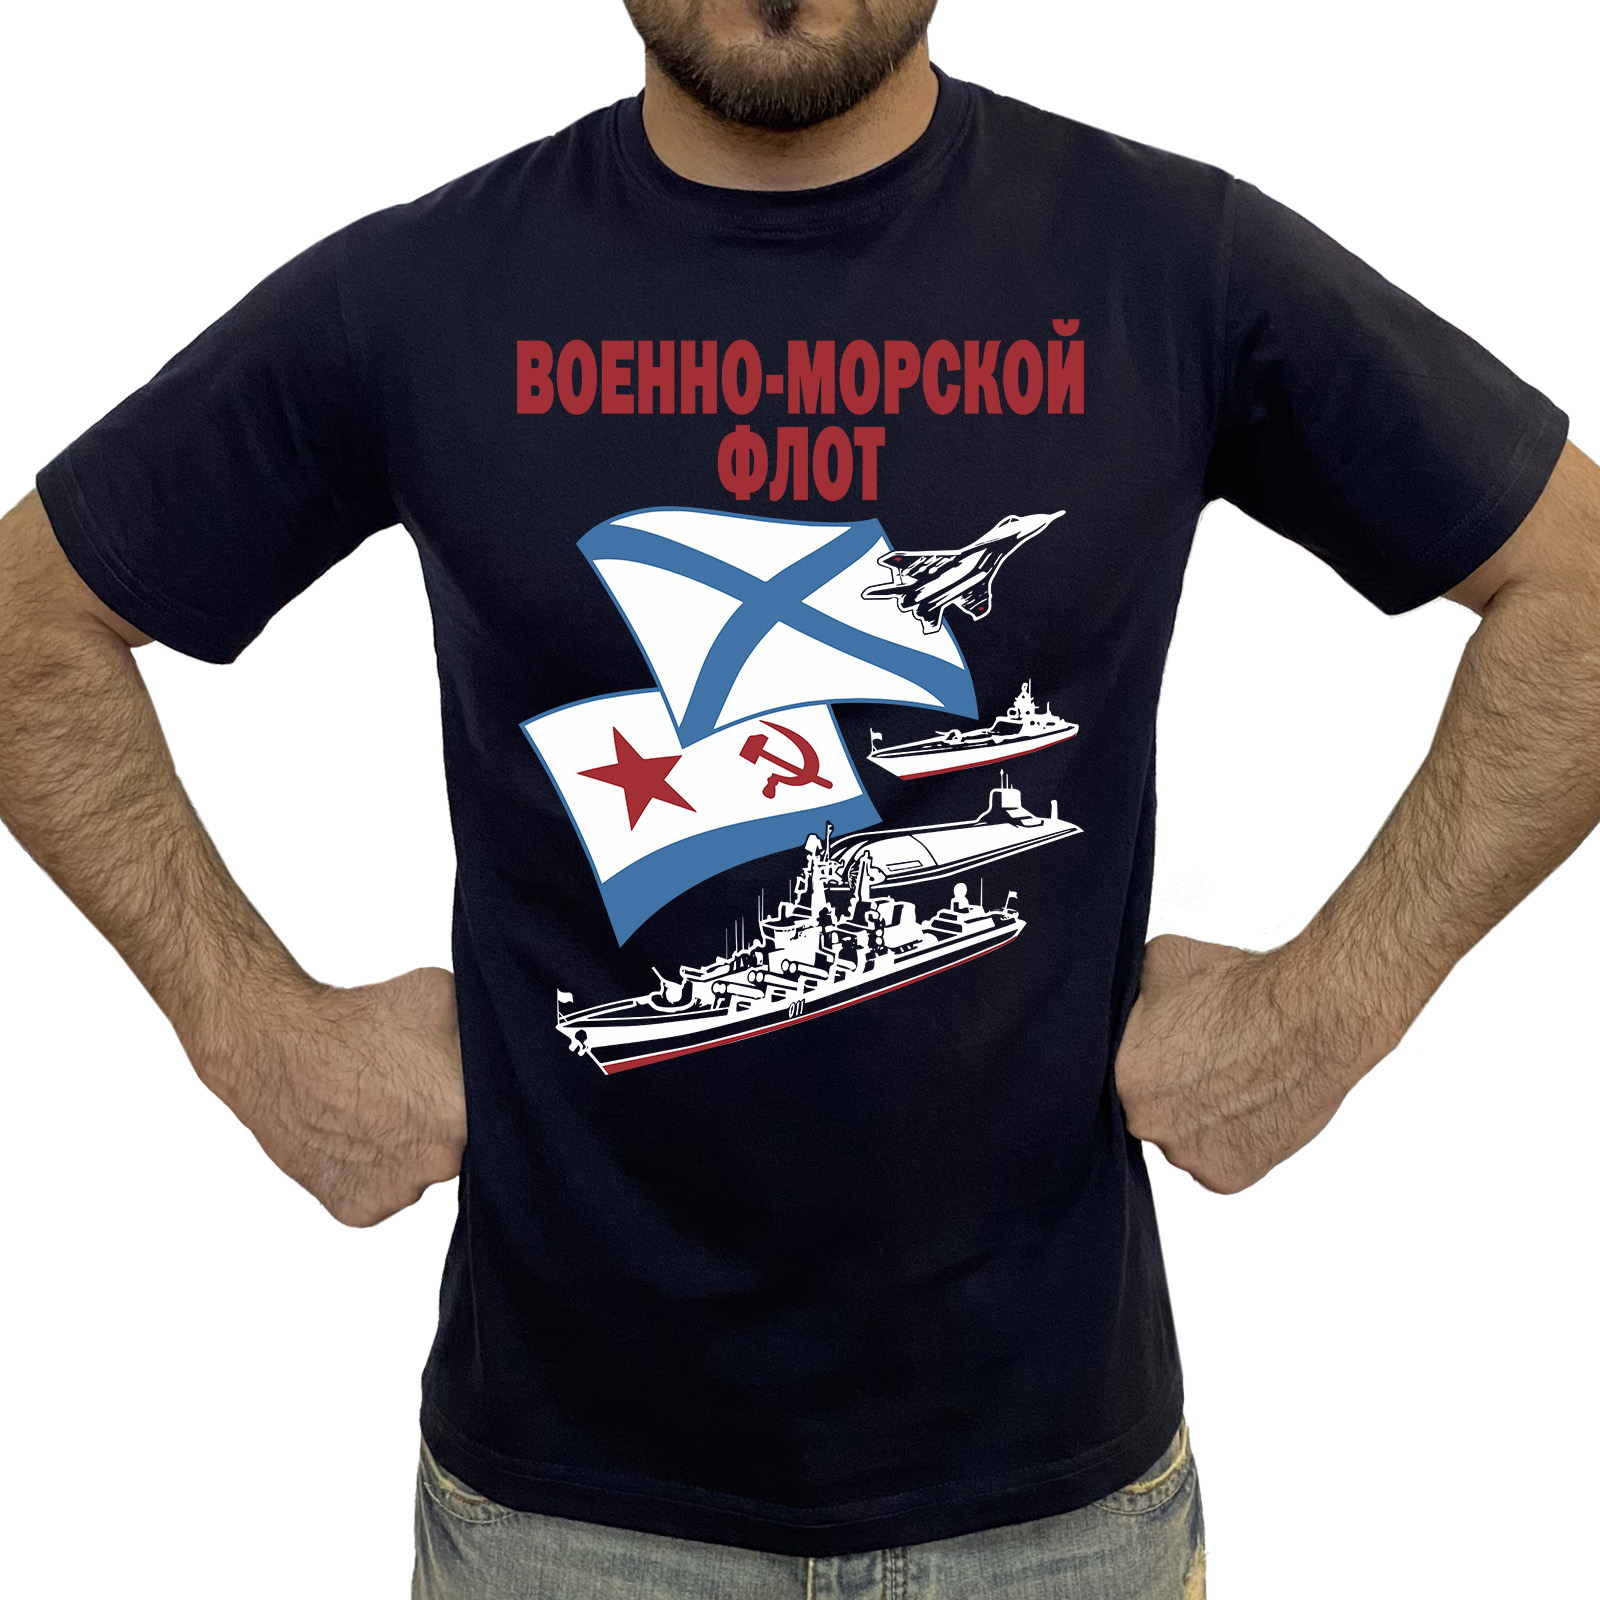 Купить в интернет магазине футболку ВМФ на подарок моряку